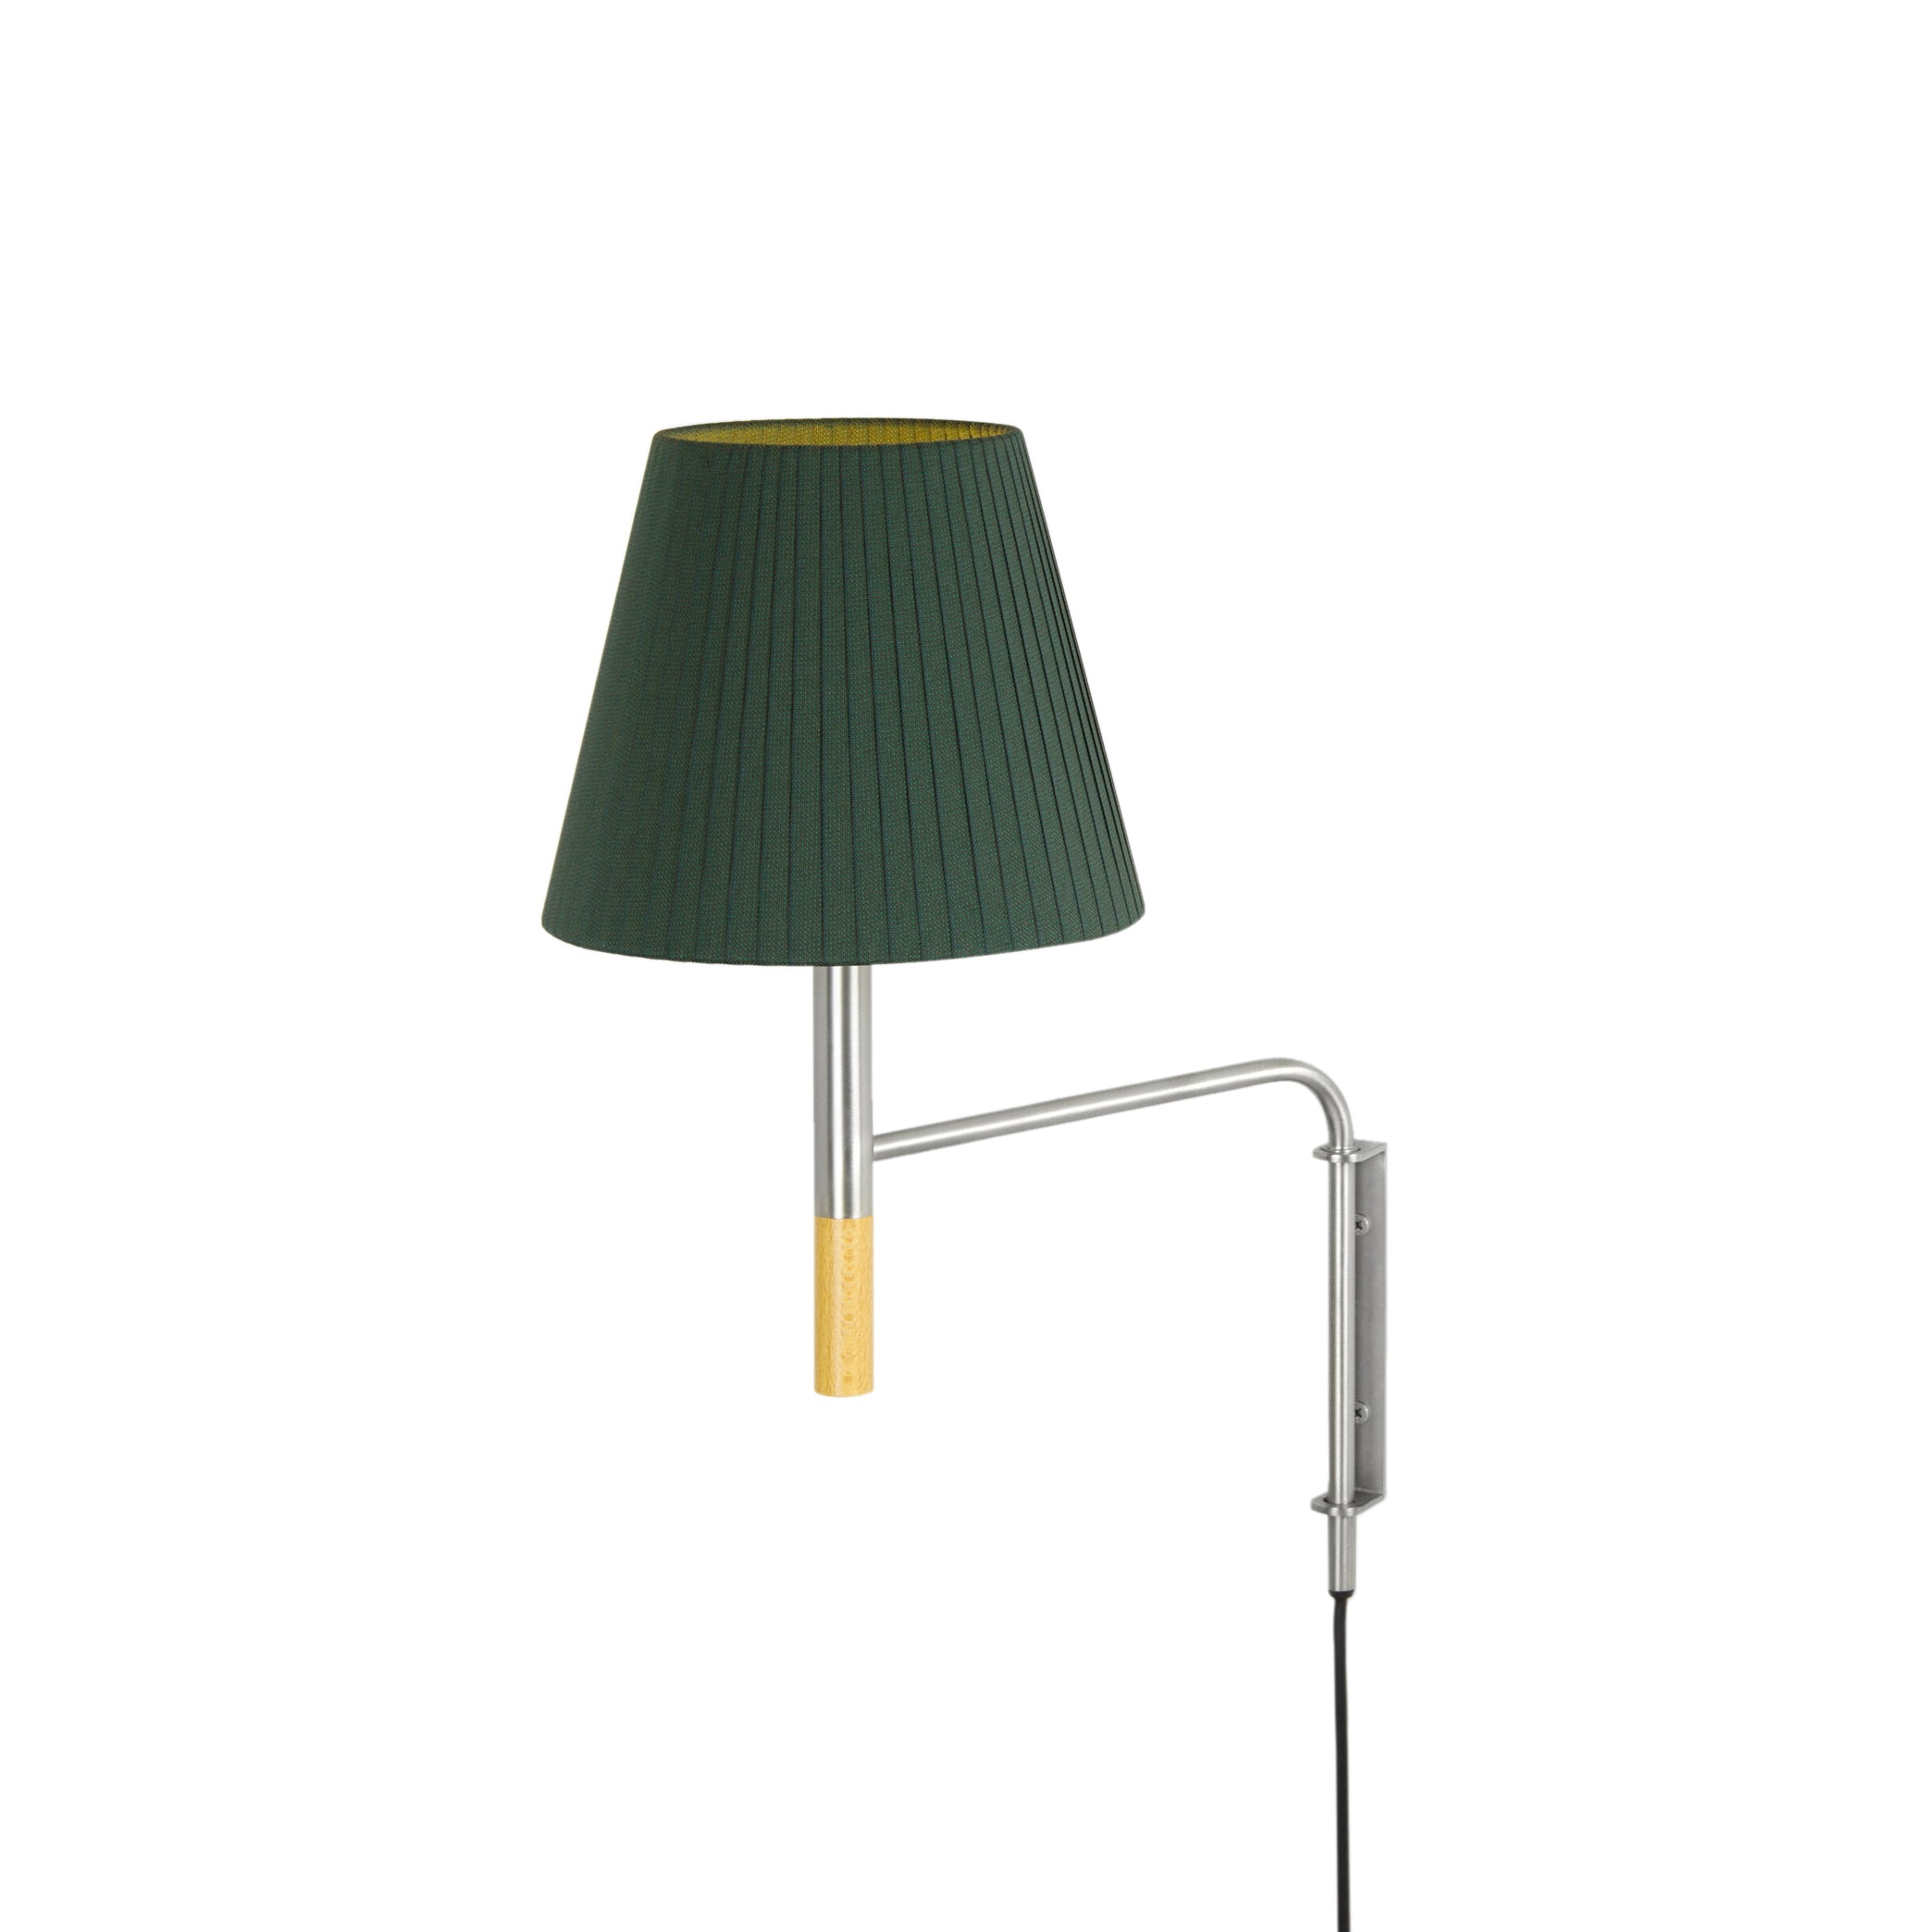 BC Wall Lamp: BC1 + Green Ribbon